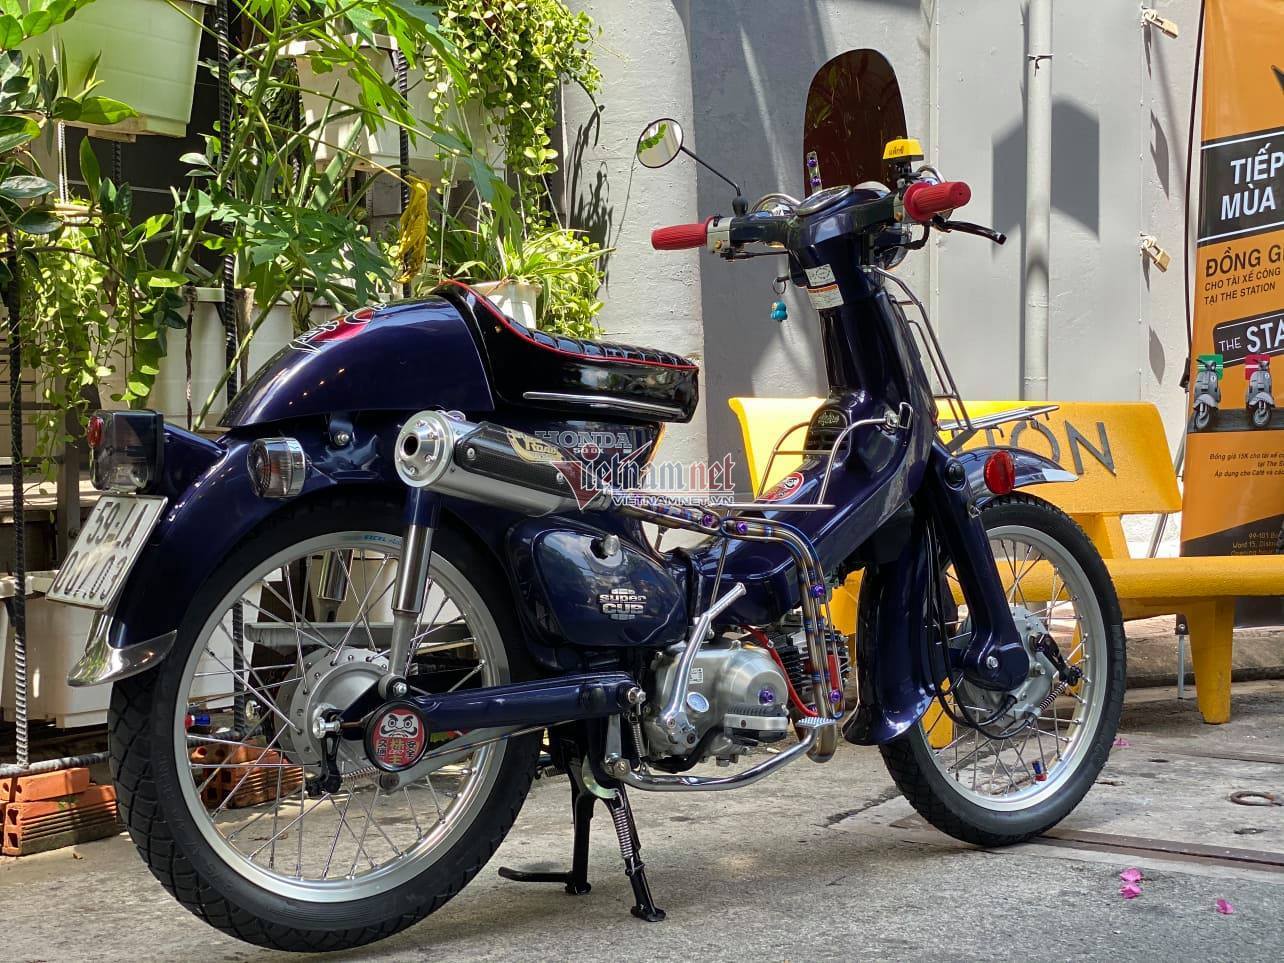 Ngắm Honda Cub 23 Năm Tuổi Độ Cực Chất Của Dân Chơi Sài Gòn